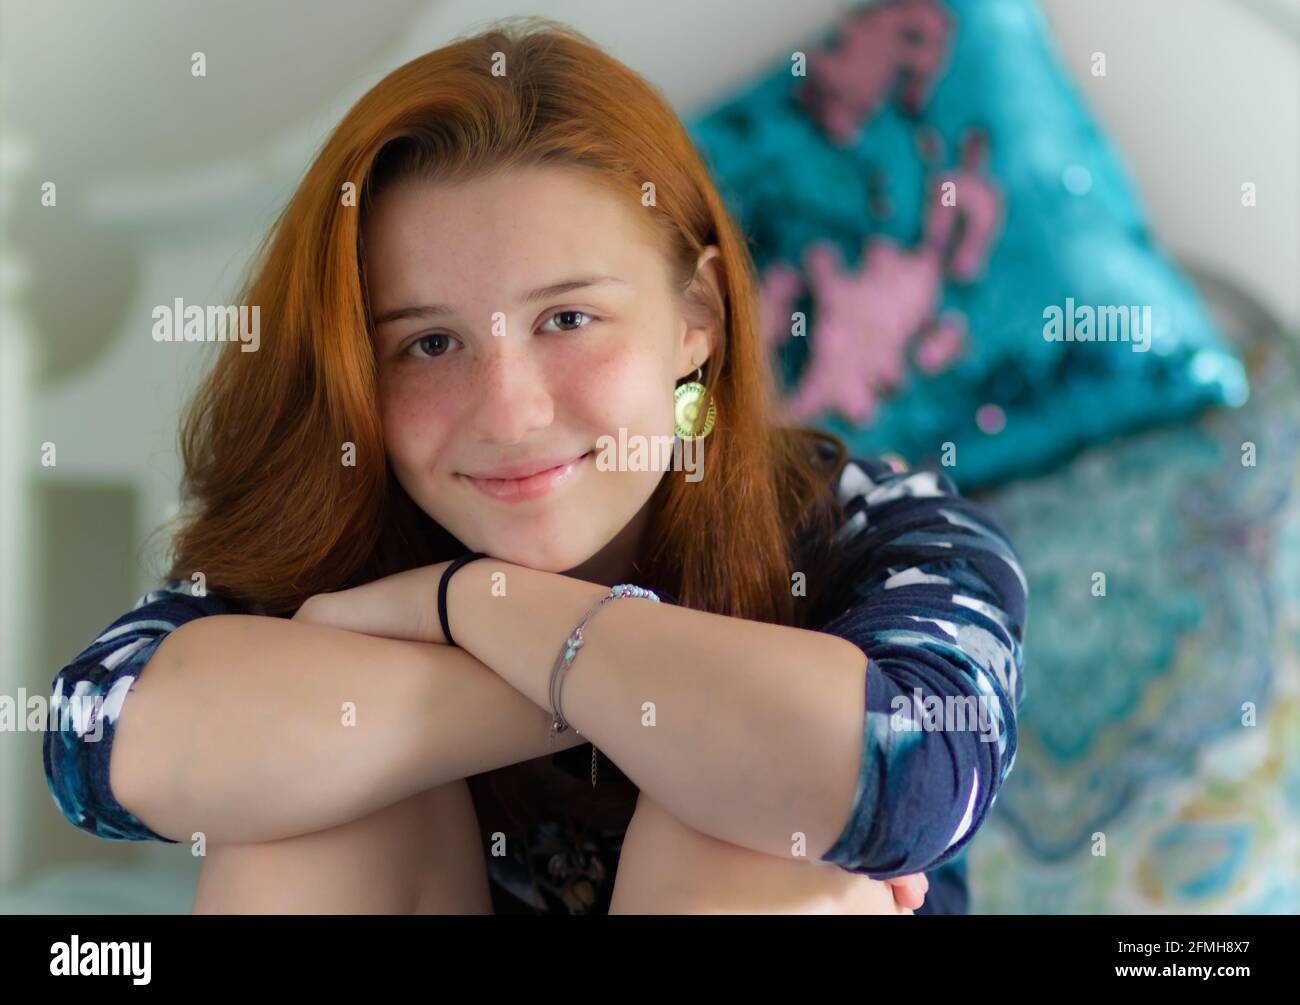 Eine hübsche High School Mädchen oder weibliche College-Studentin mit Rote Haare im Schlafzimmer oder Schlafsaal mit einem selbstbewussten Lächeln Und den Kopf auf den Händen auf den Knien ruhen Stockfoto